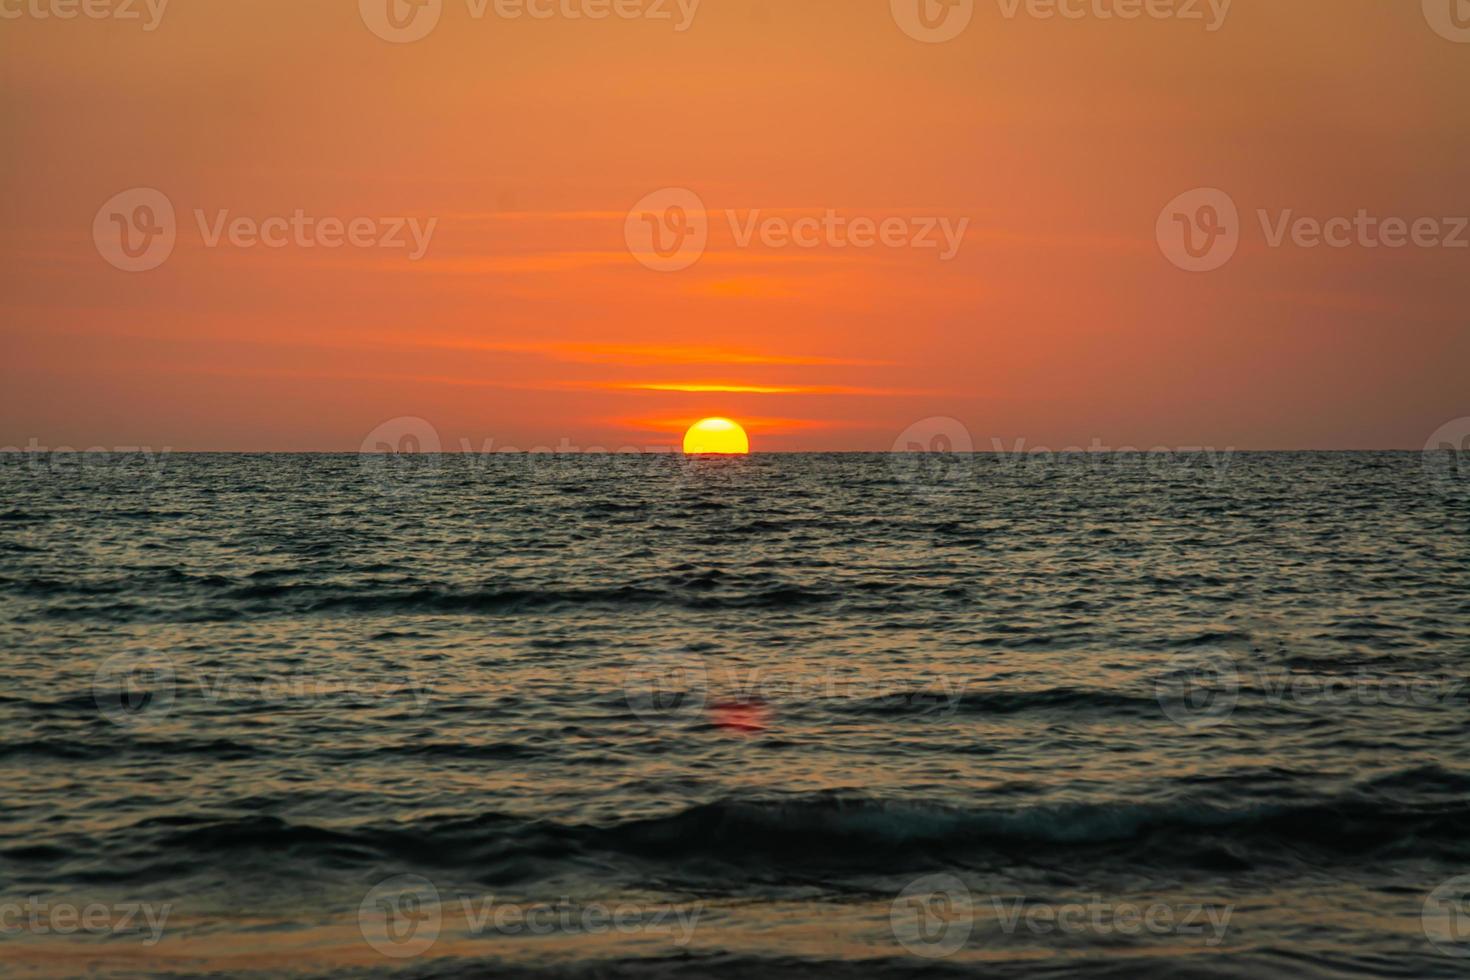 ljus solnedgång med stor gul sol under havsytan foto